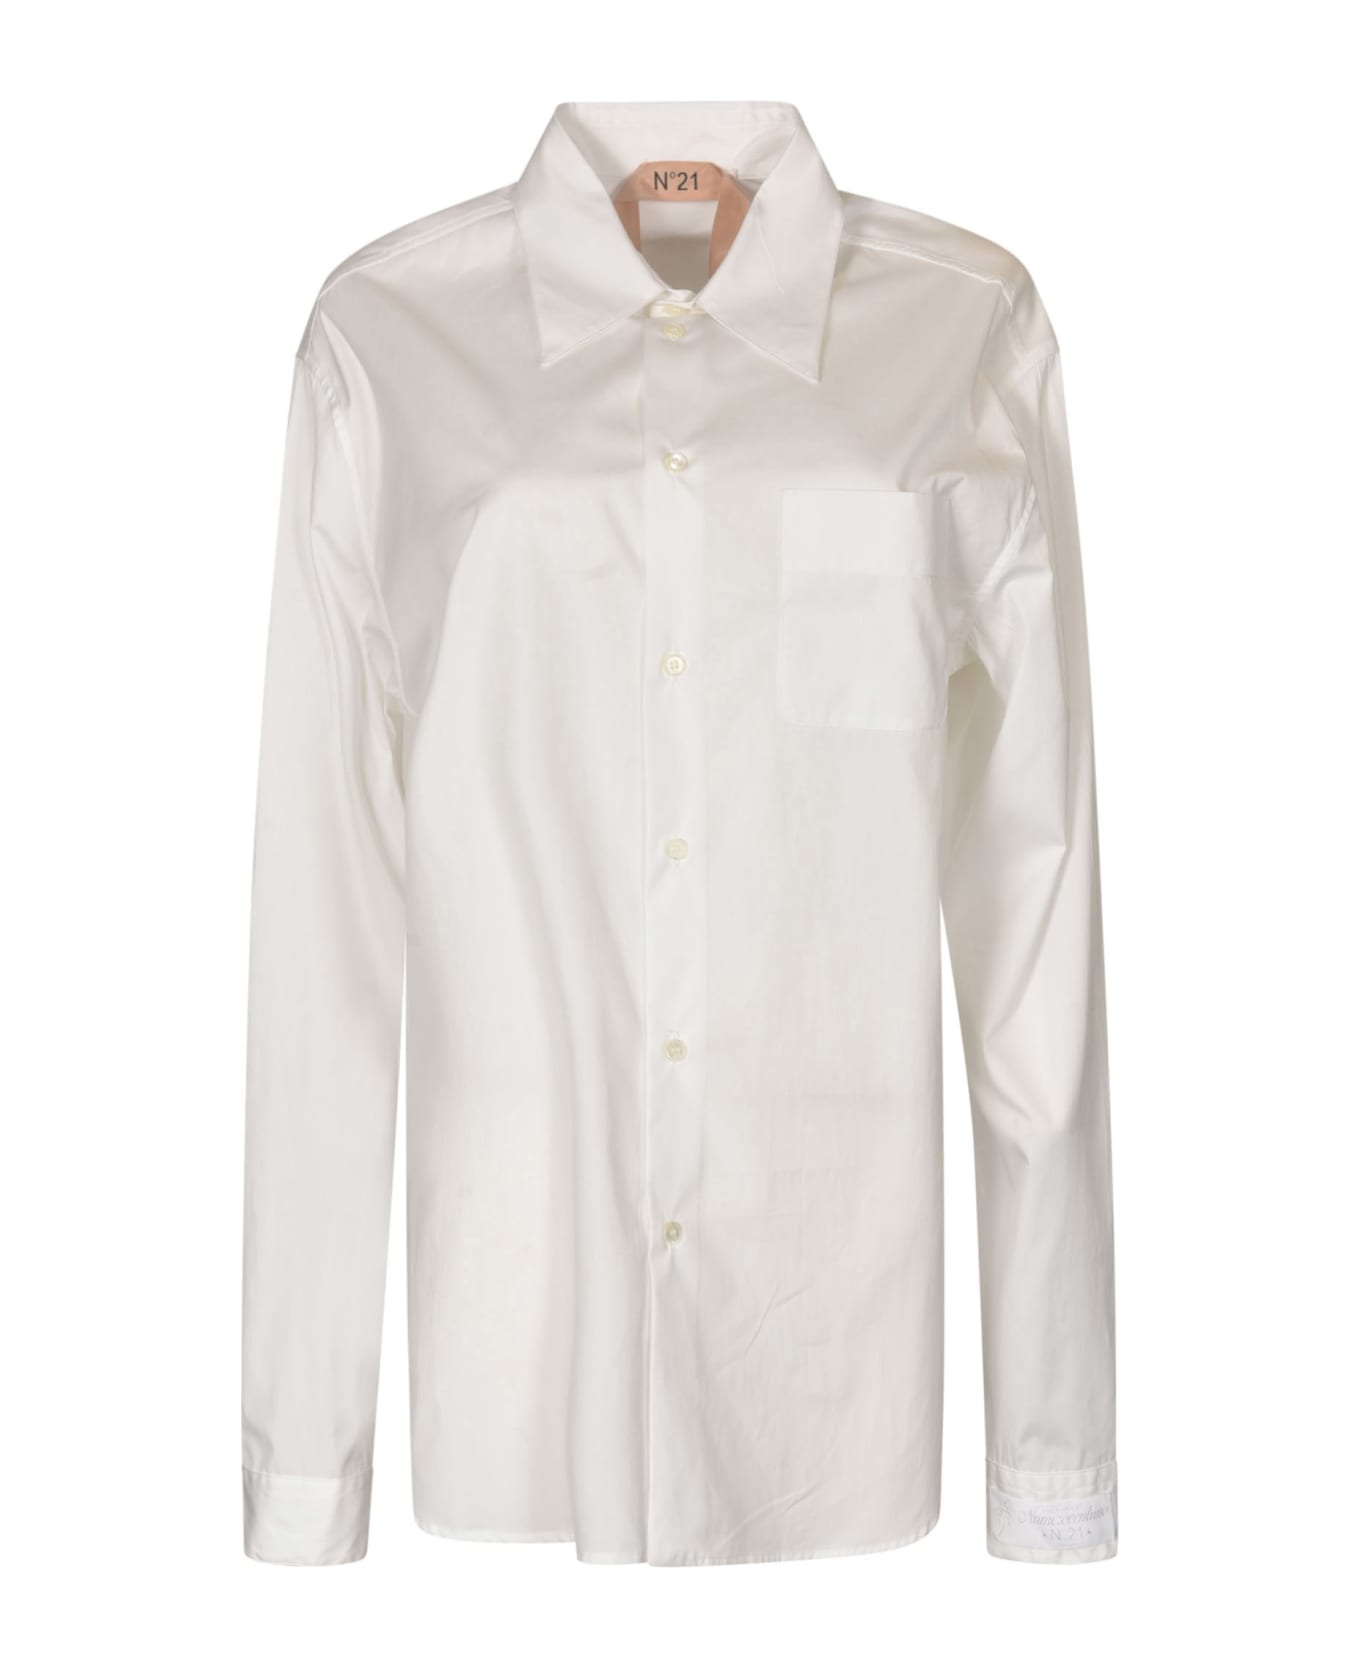 N.21 Long-sleeved Shirt - White シャツ